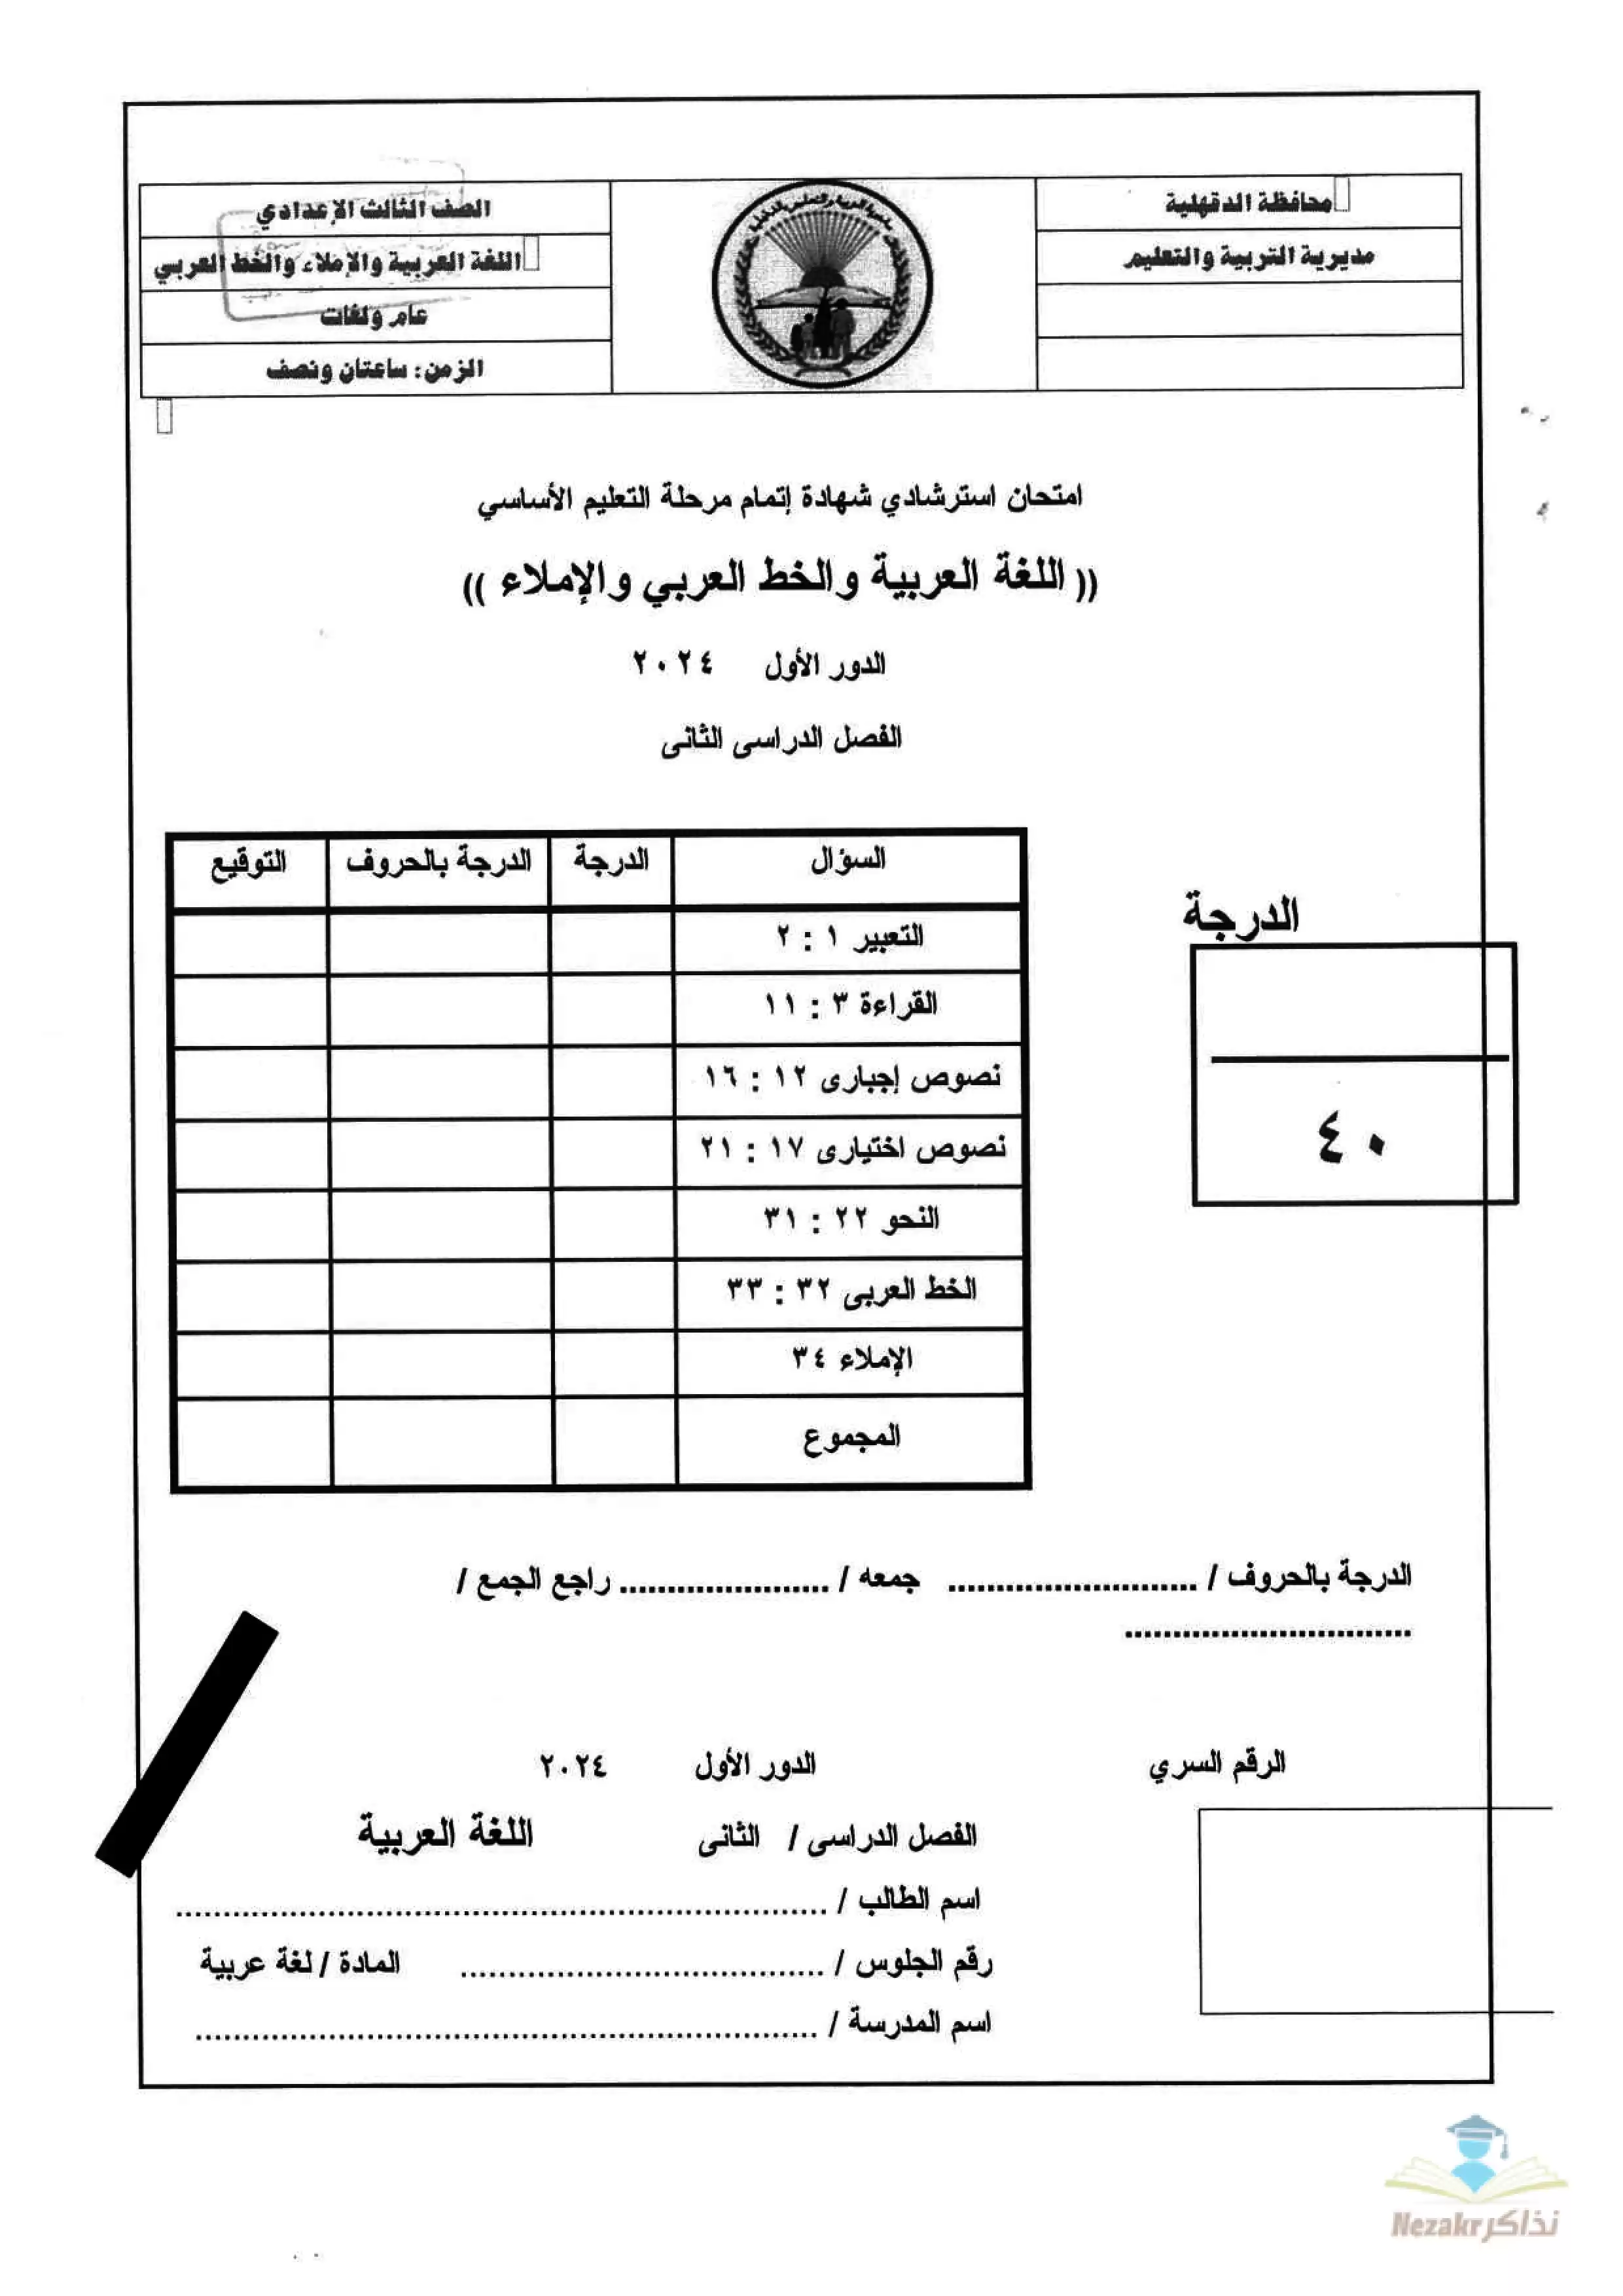 نموذج امتحان اللغة العربية الاسترشادي للصف الثالث الإعدادي الفصل الدراسي الثاني بمحافظة الدقهلية